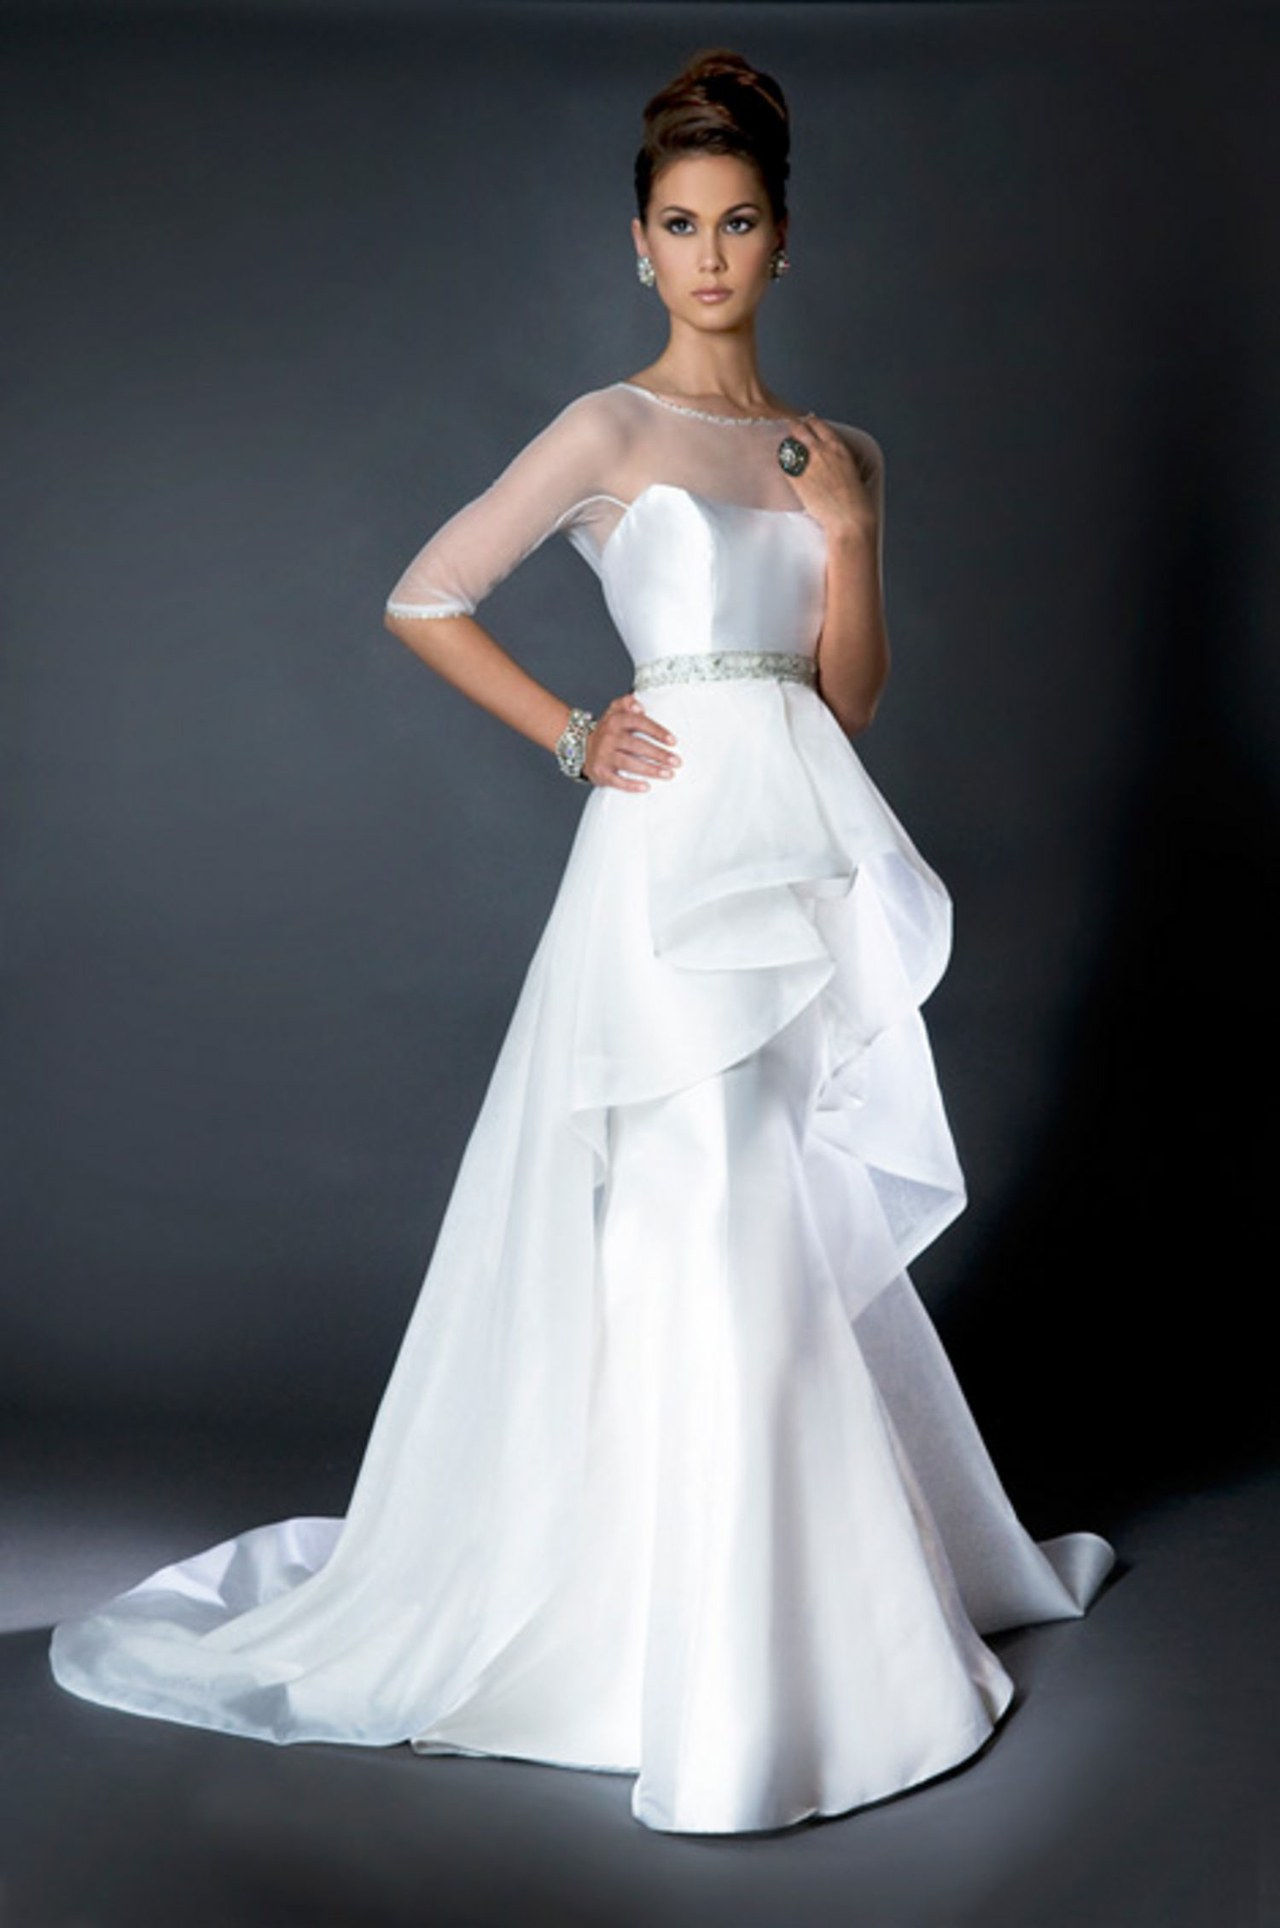 五 elizabeth taylor first wedding dresses inspired by wedding gowns conrad hilton celebrity weddings 0626